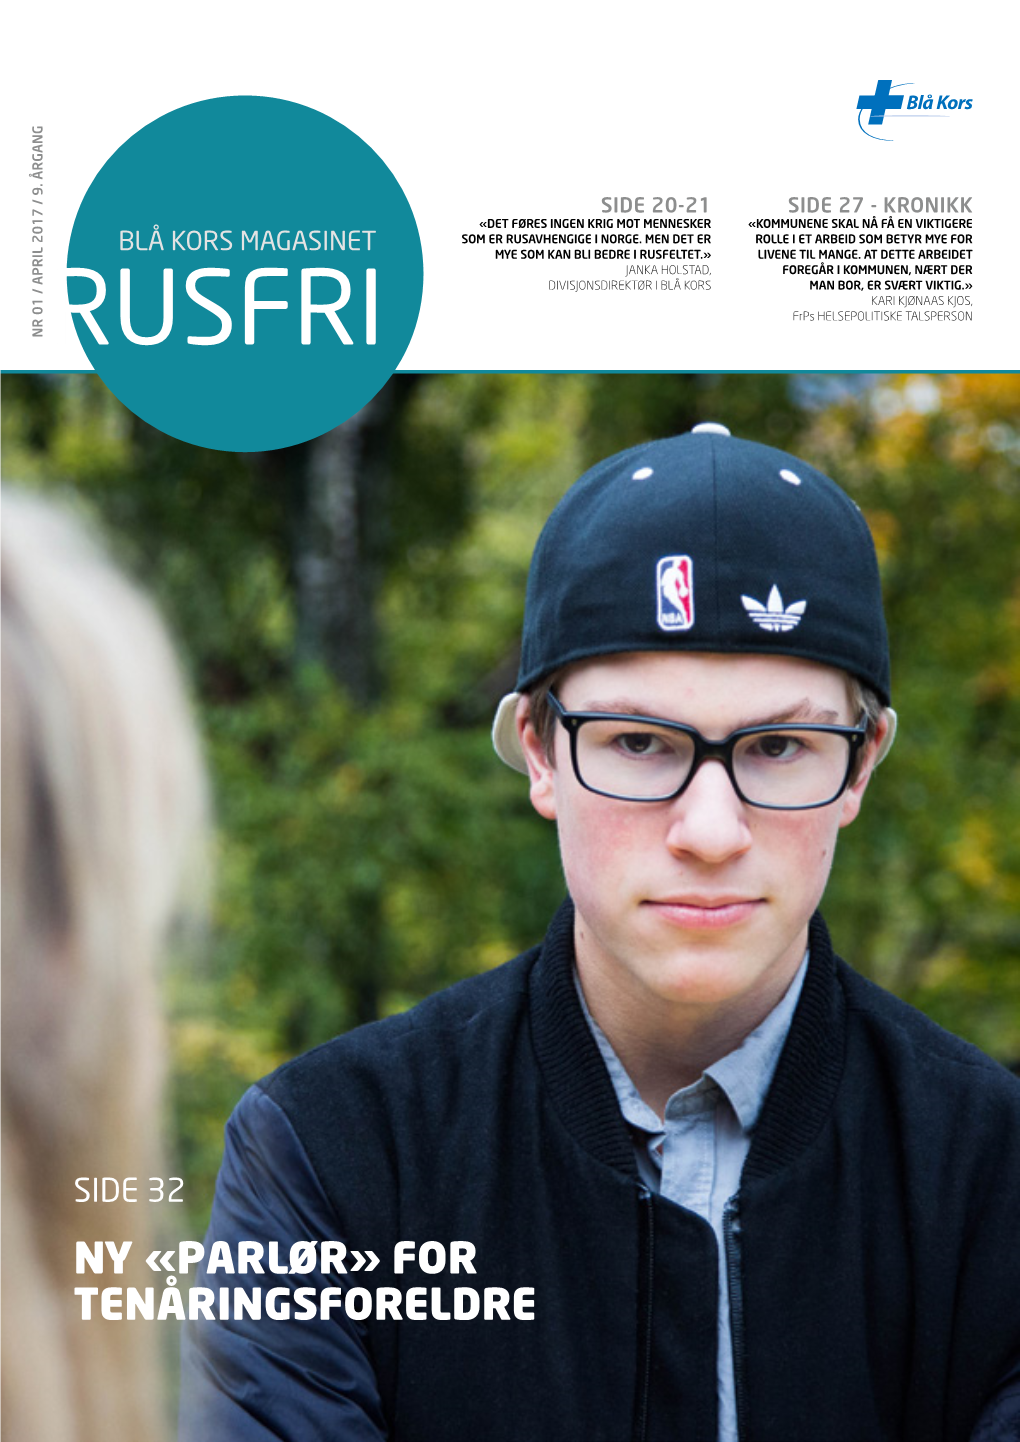 Rusfri Tenåringsforeldre Ny «Parlør» for Side 32 Blå Kors Magasinet